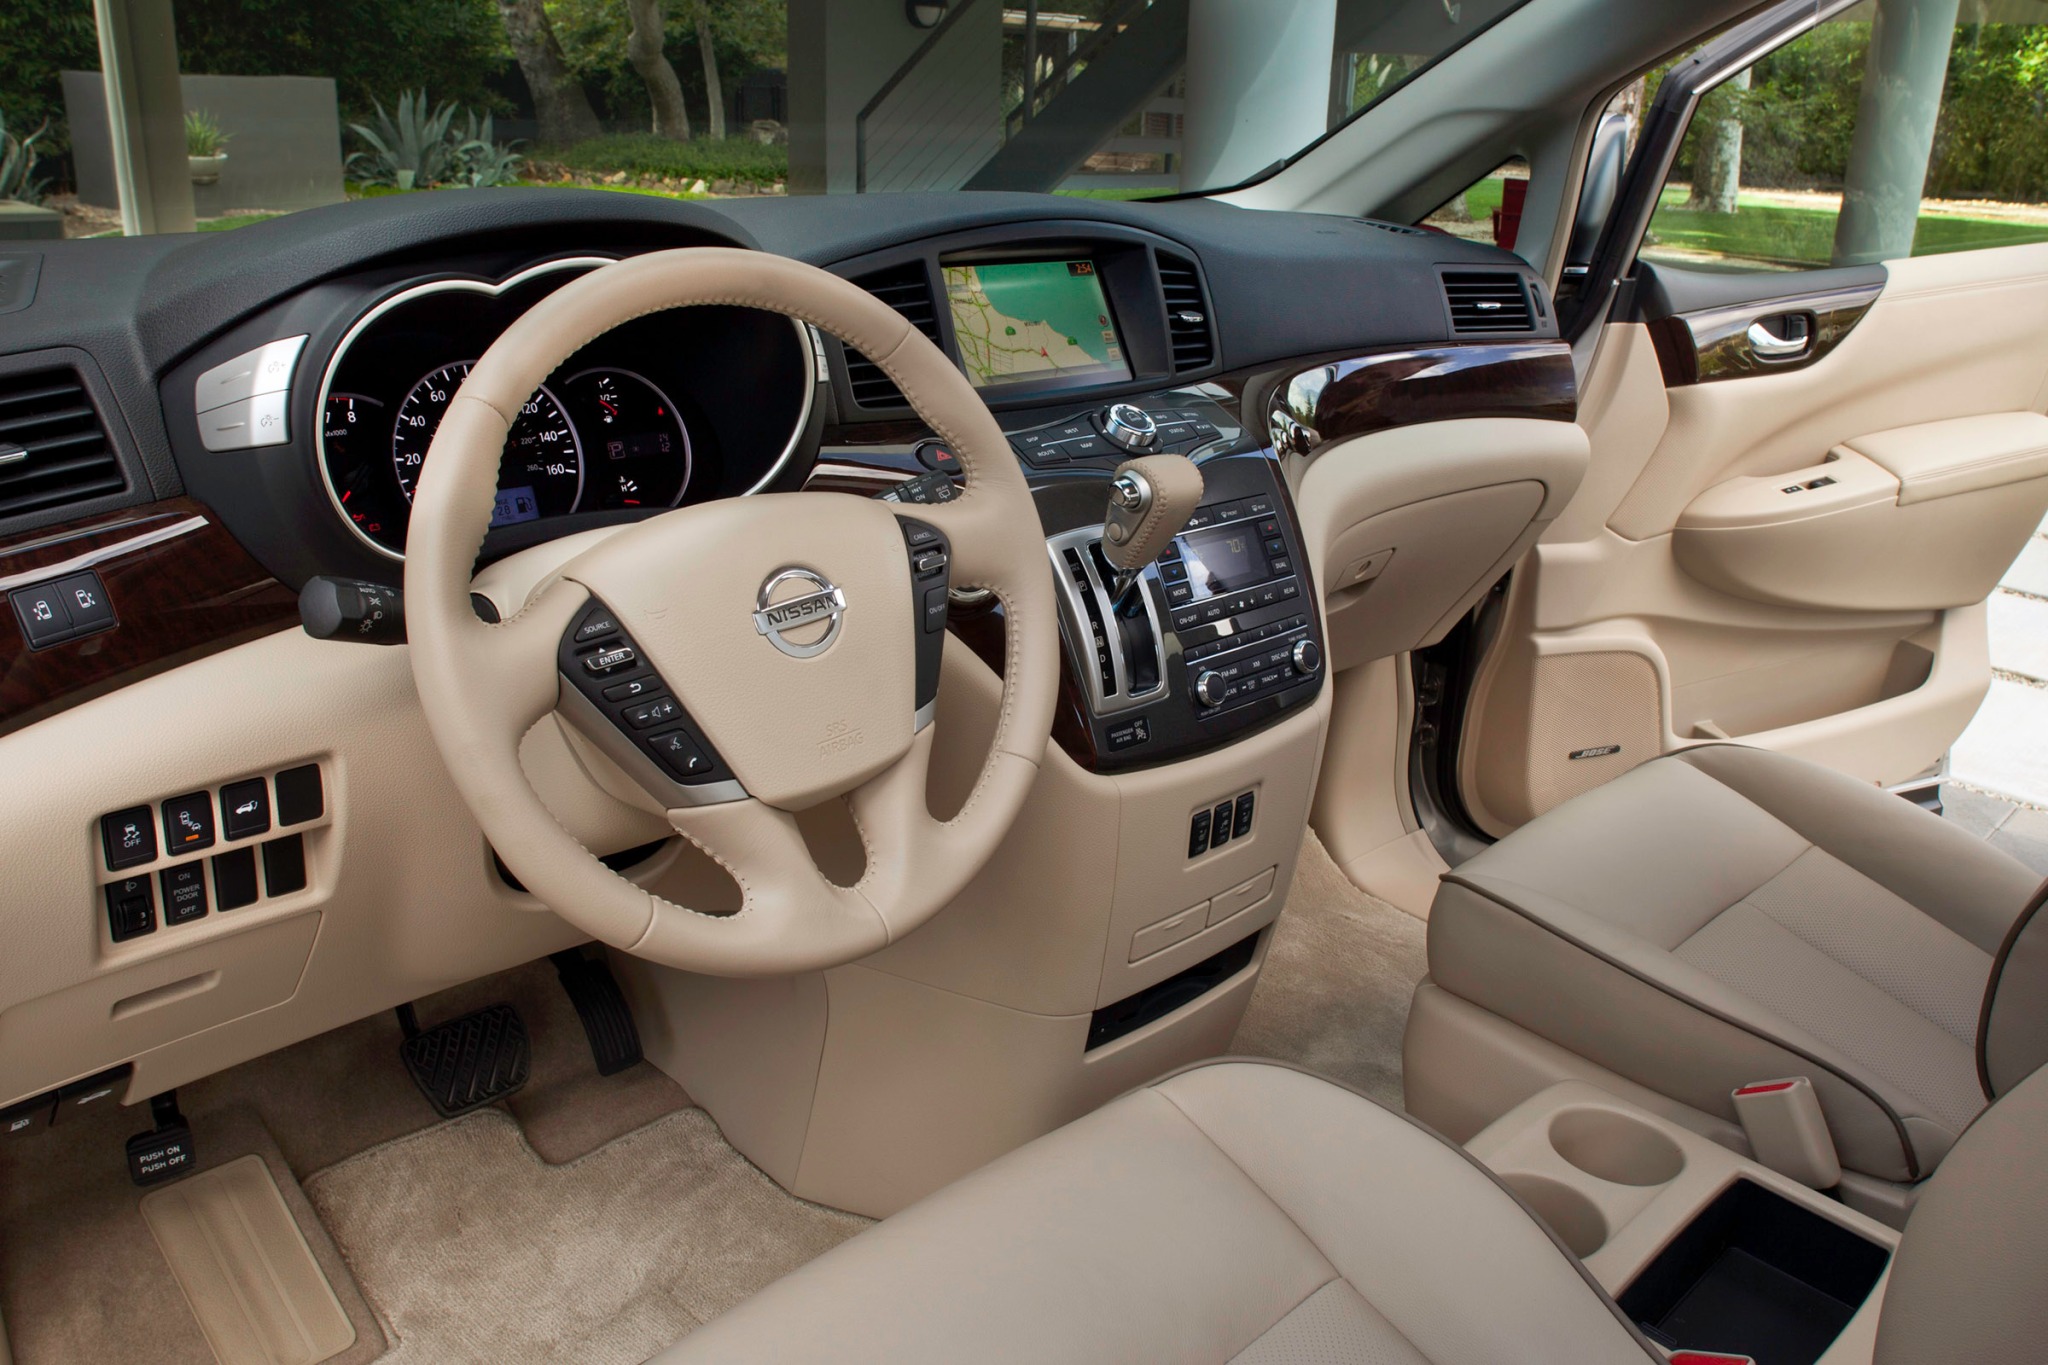 2012 Nissan Quest LE Passenger Minivan Interior